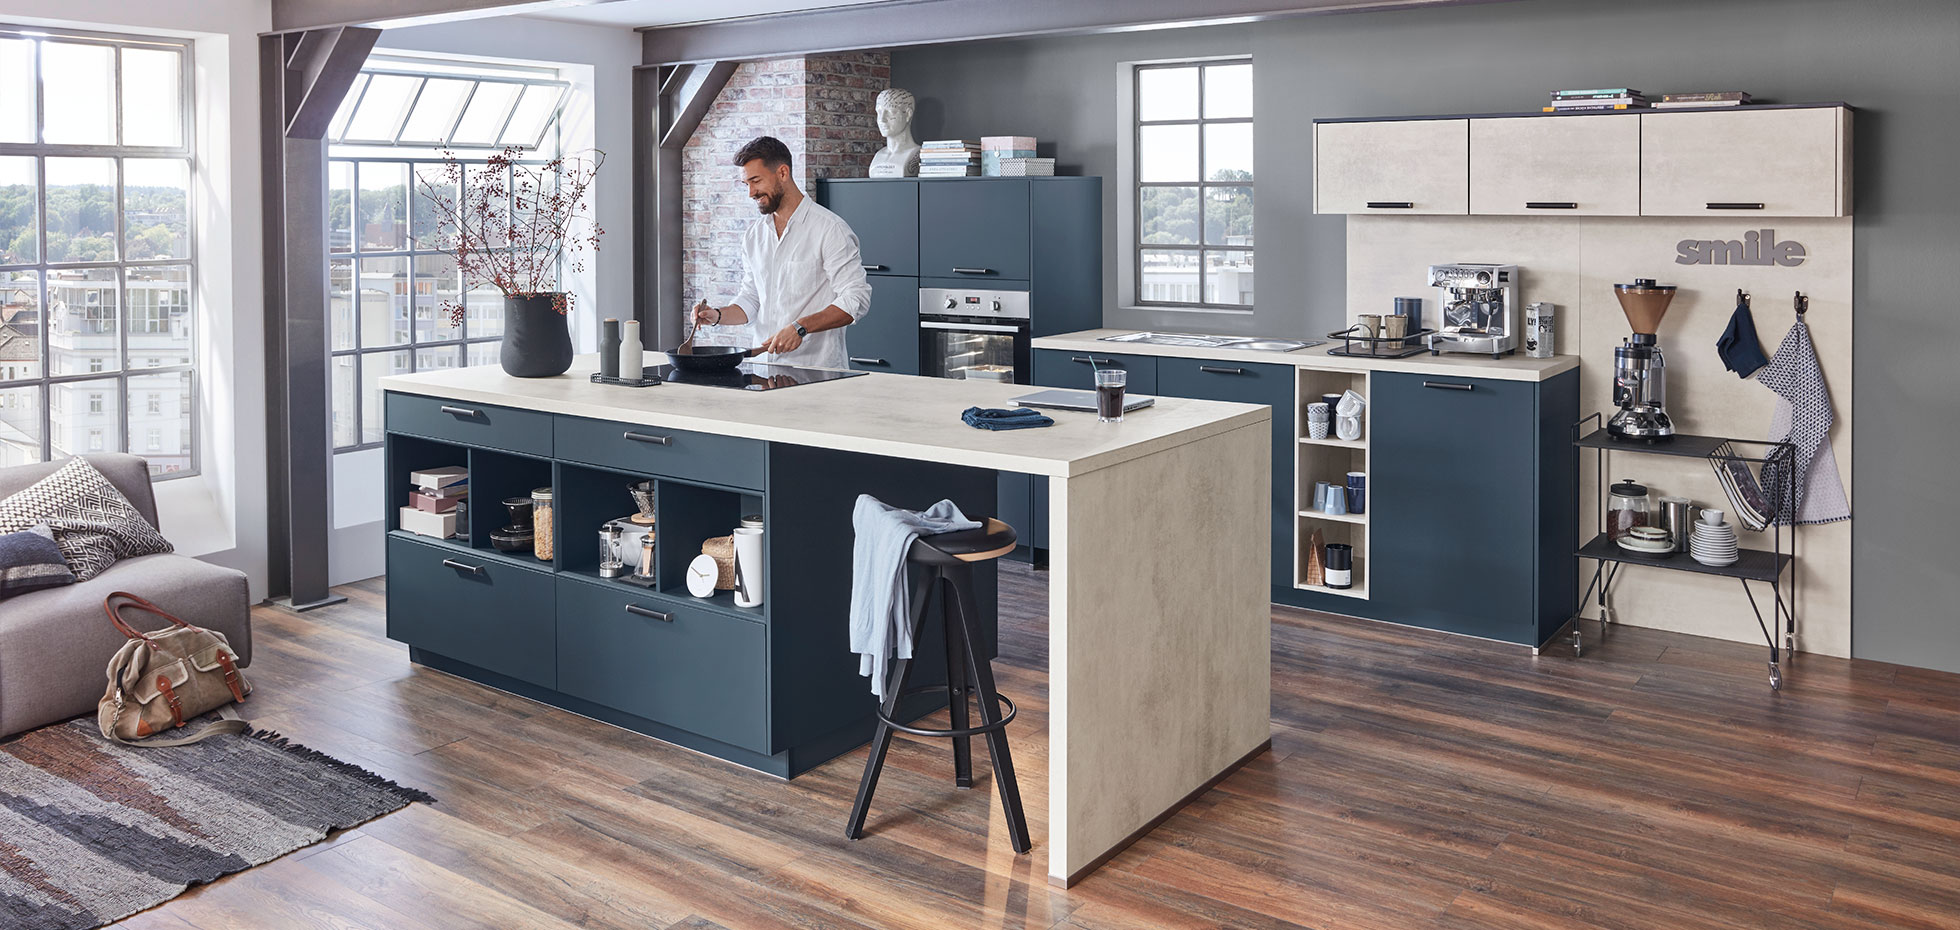 Eine offene Küche kann ein wunderbarer Weg sein, um den Wohn- und Essbereich modern zu kombinieren.